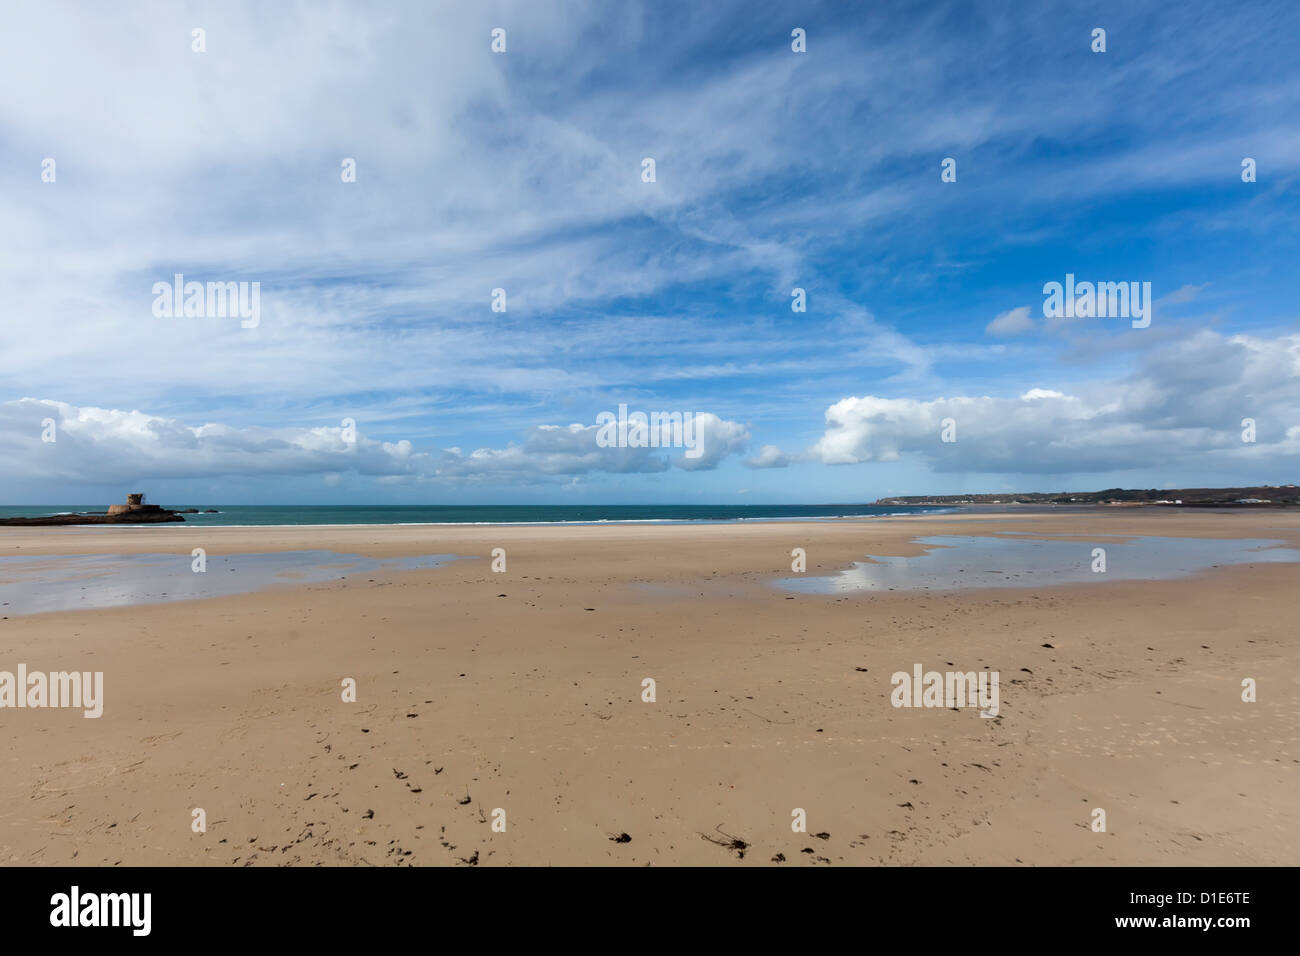 Beach at St Ouen's Bay, La Baie de St Ouen, Jersey west coast, Channel islands, UK Stock Photo